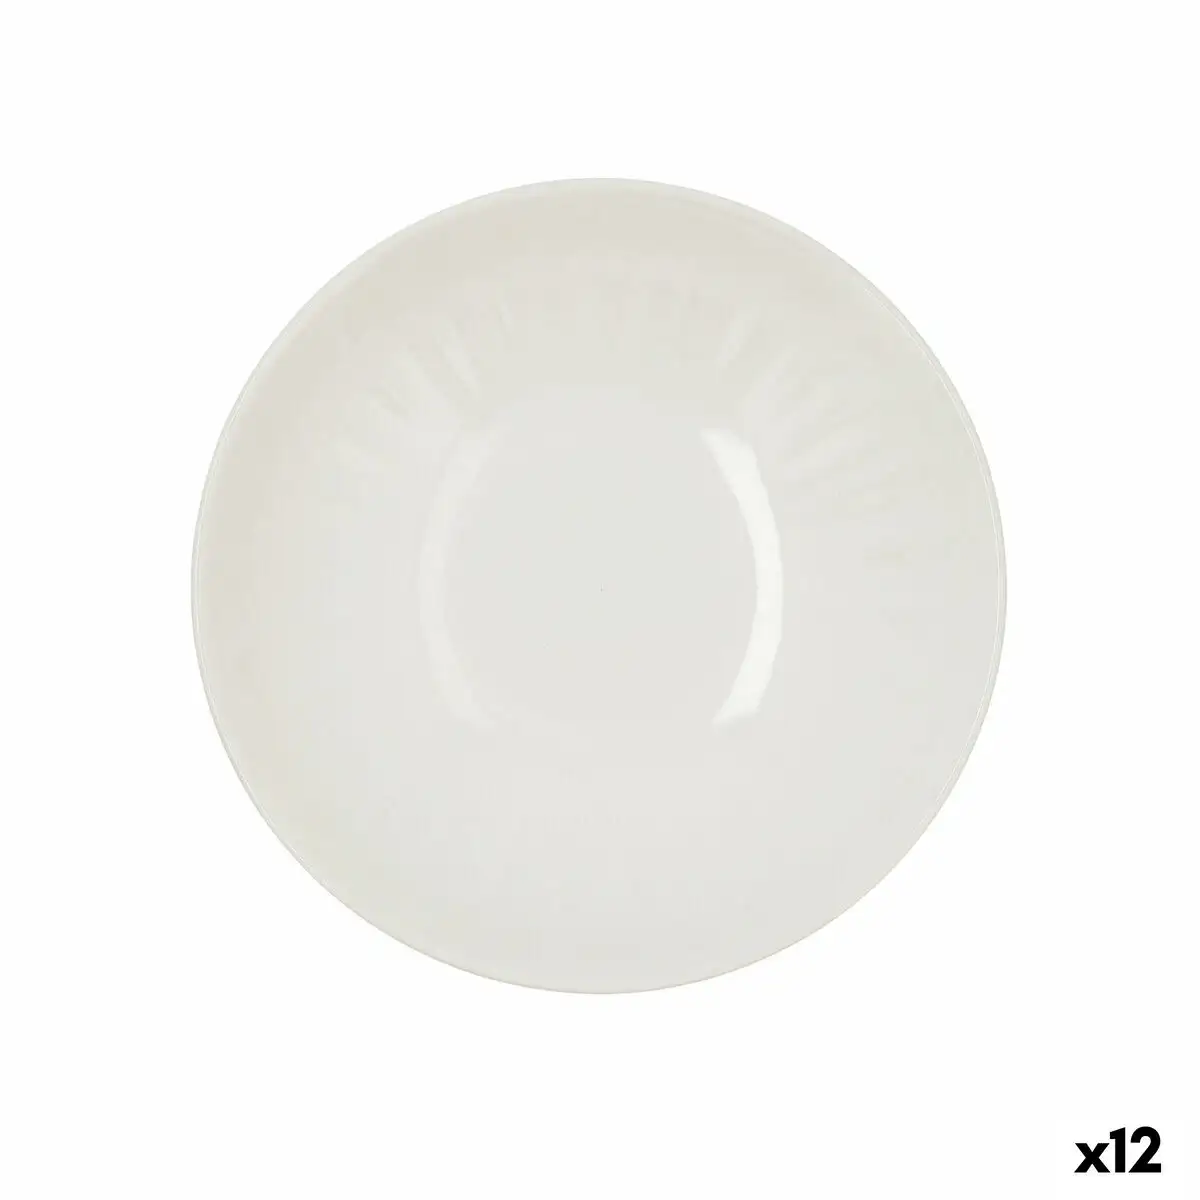 Assiette creuse bidasoa romantic ivory ceramique blanc 22 cm 12 unites _2943. Bienvenue sur DIAYTAR SENEGAL - Où Chaque Produit a son Charme. Explorez notre sélection minutieuse et trouvez des articles qui vous séduisent et vous inspirent.